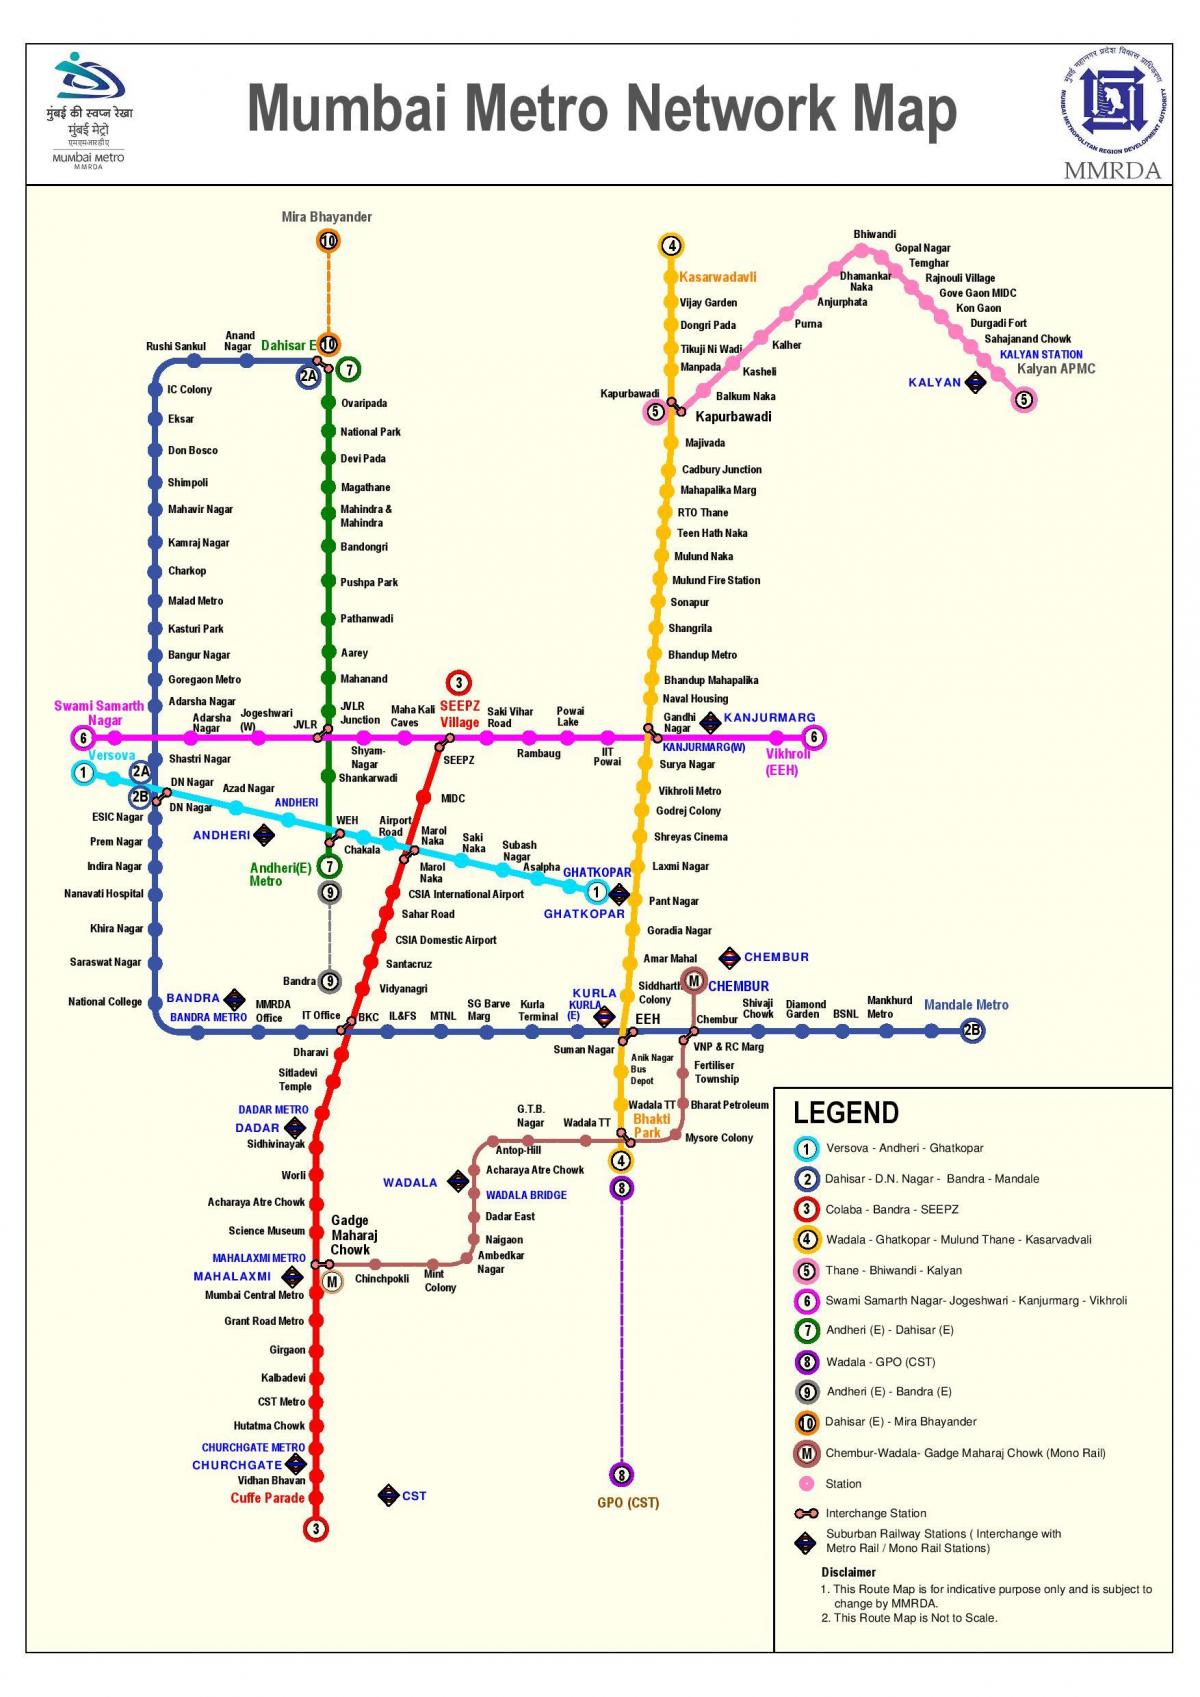 ممبئی میٹرو اسٹیشن کا نقشہ